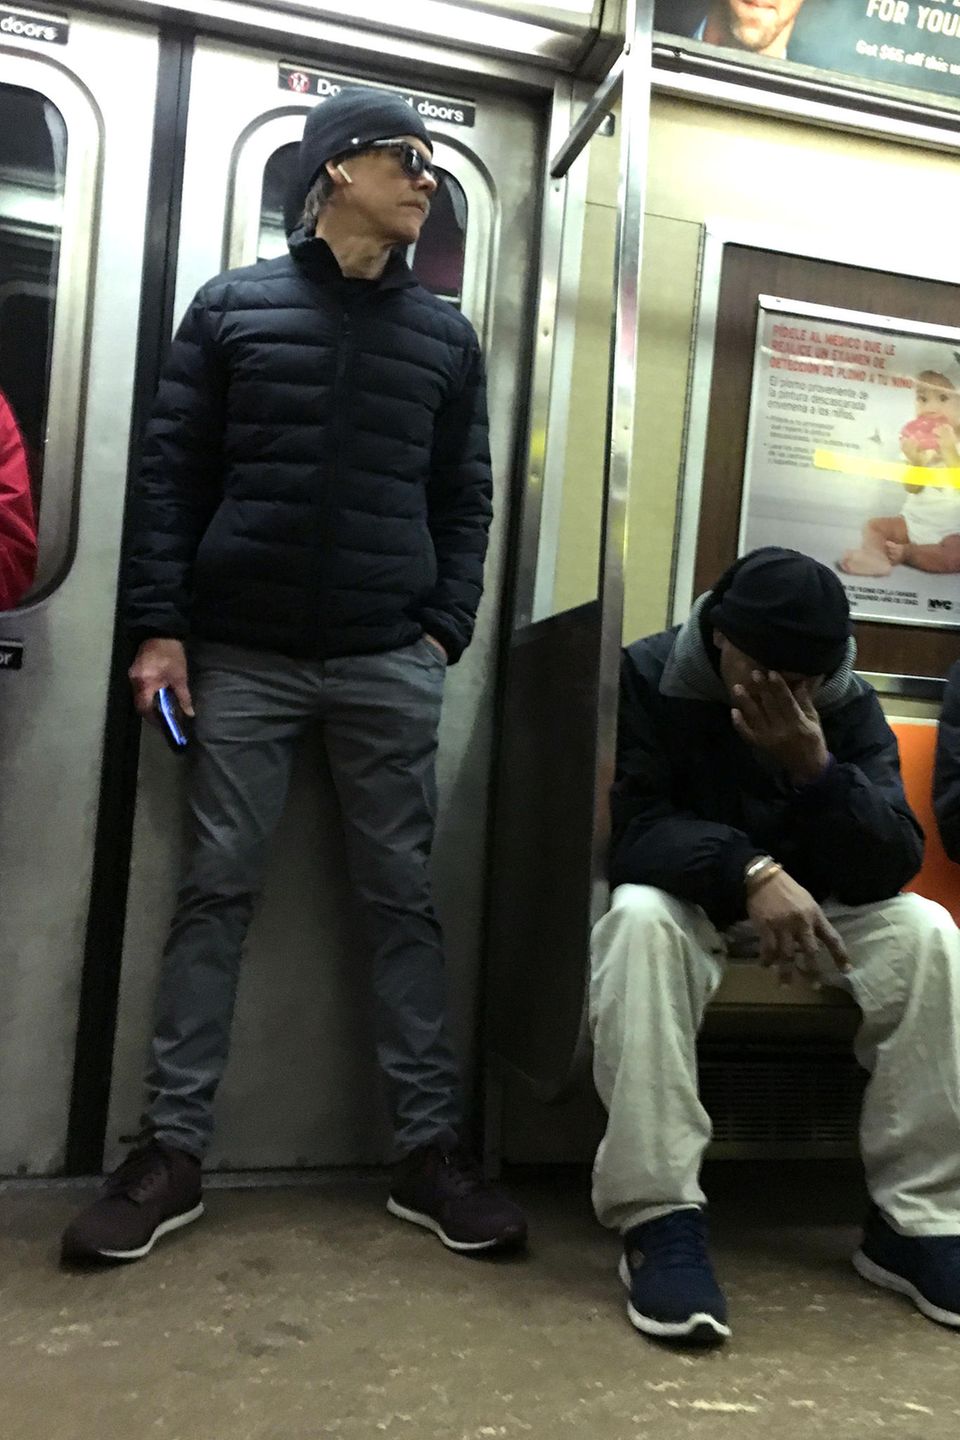 Gut getarnt schleicht sich Hollywoodstar Kevin Bacon in die NYC Subway. Wie aufregend!